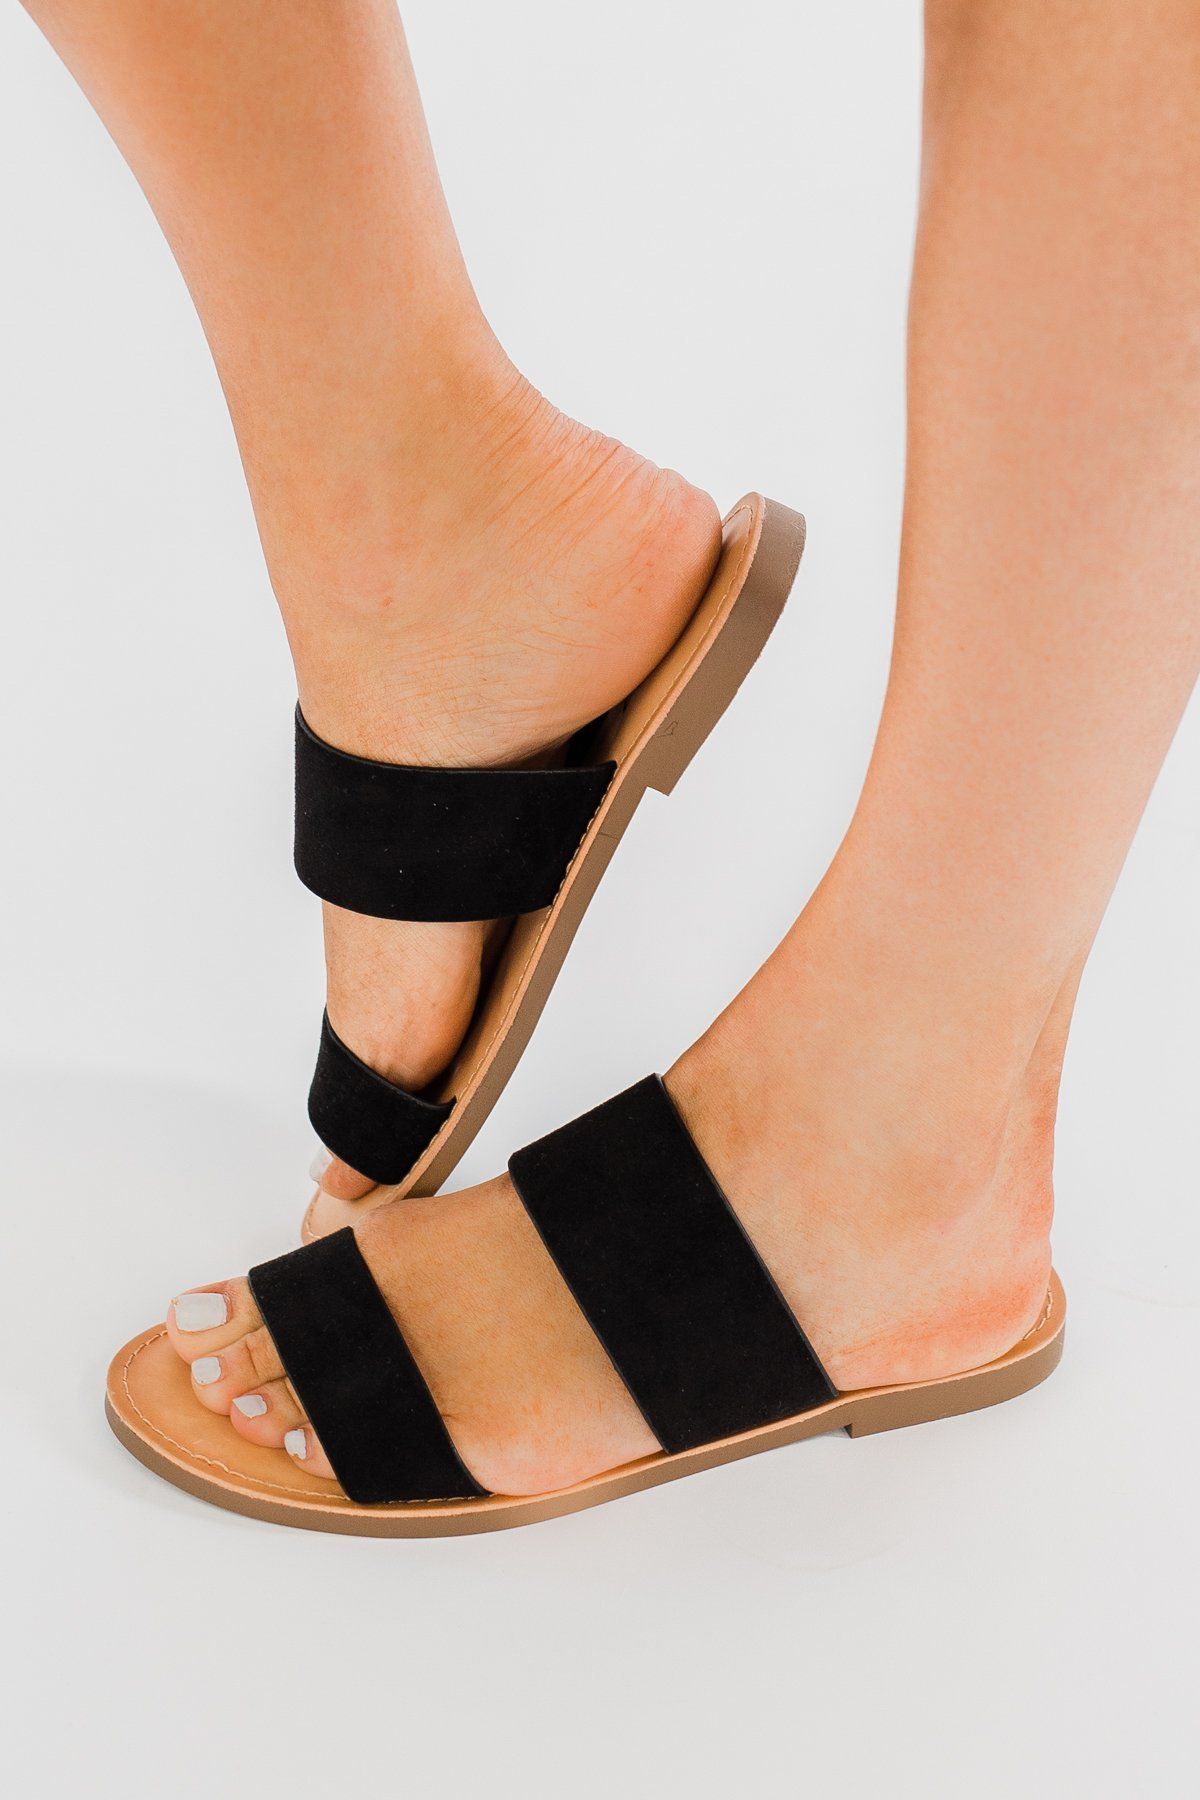 Slip-on sandals